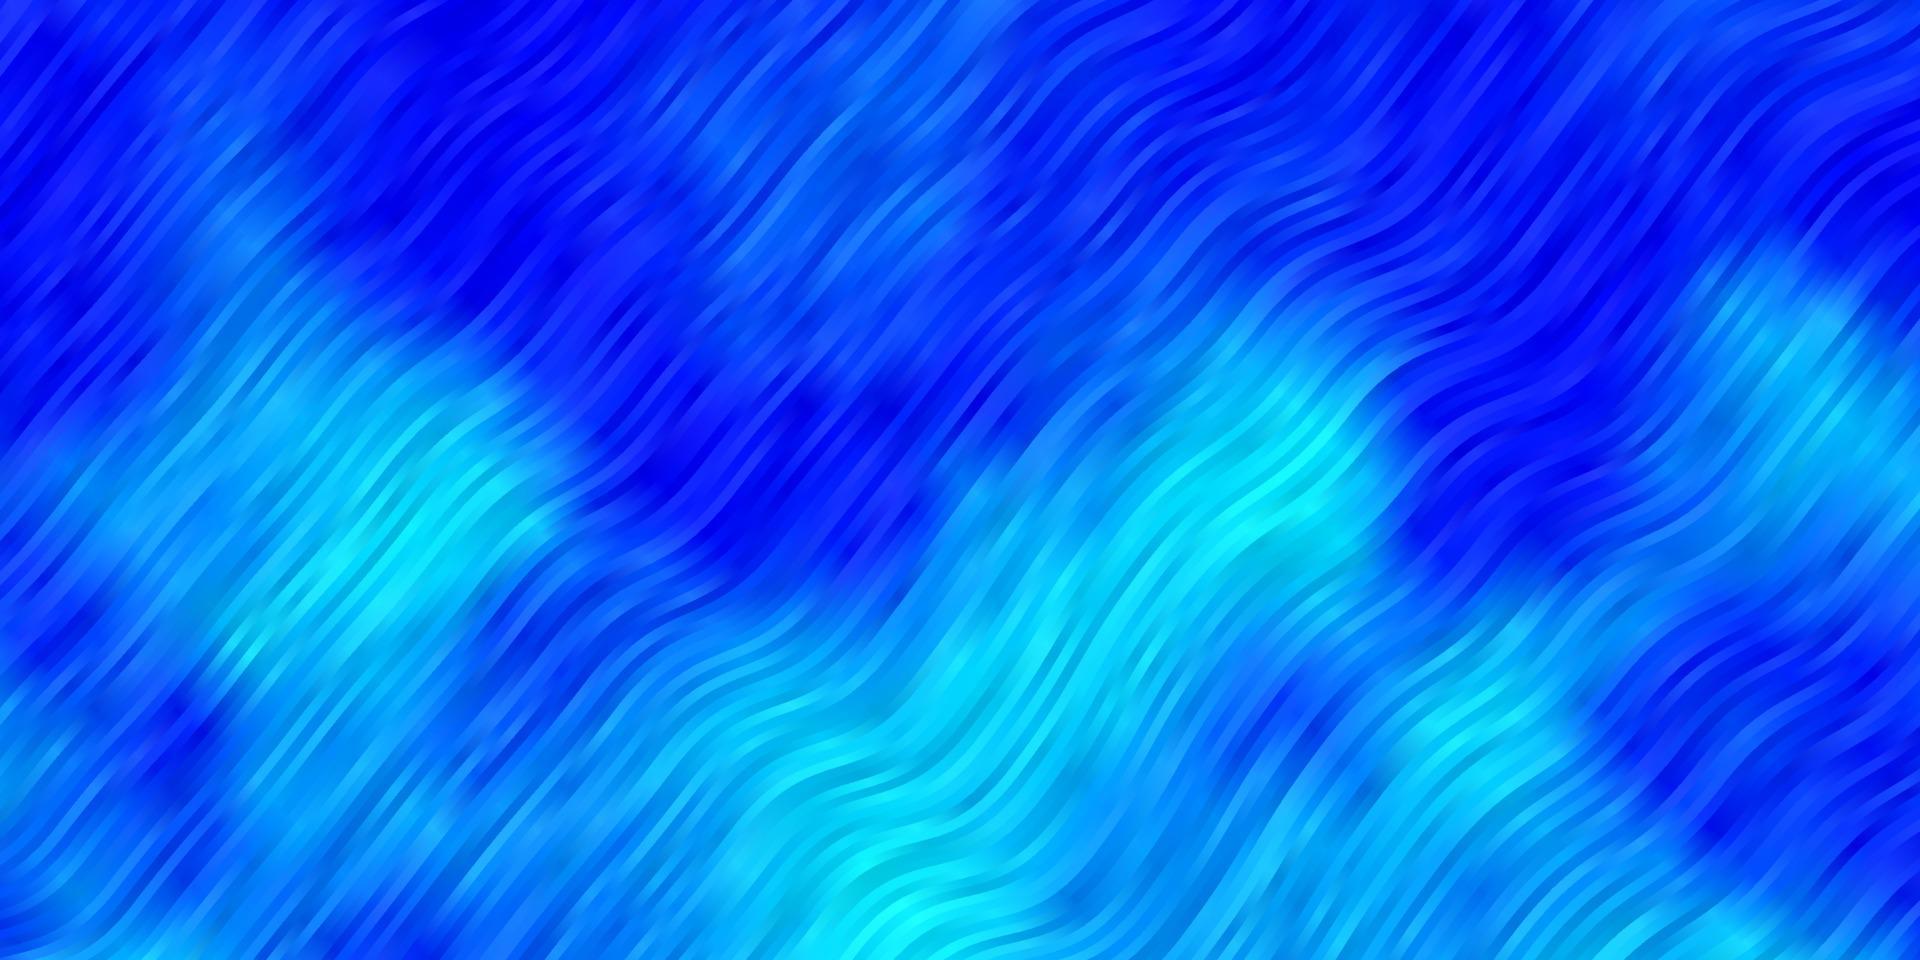 modello vettoriale azzurro con linee.